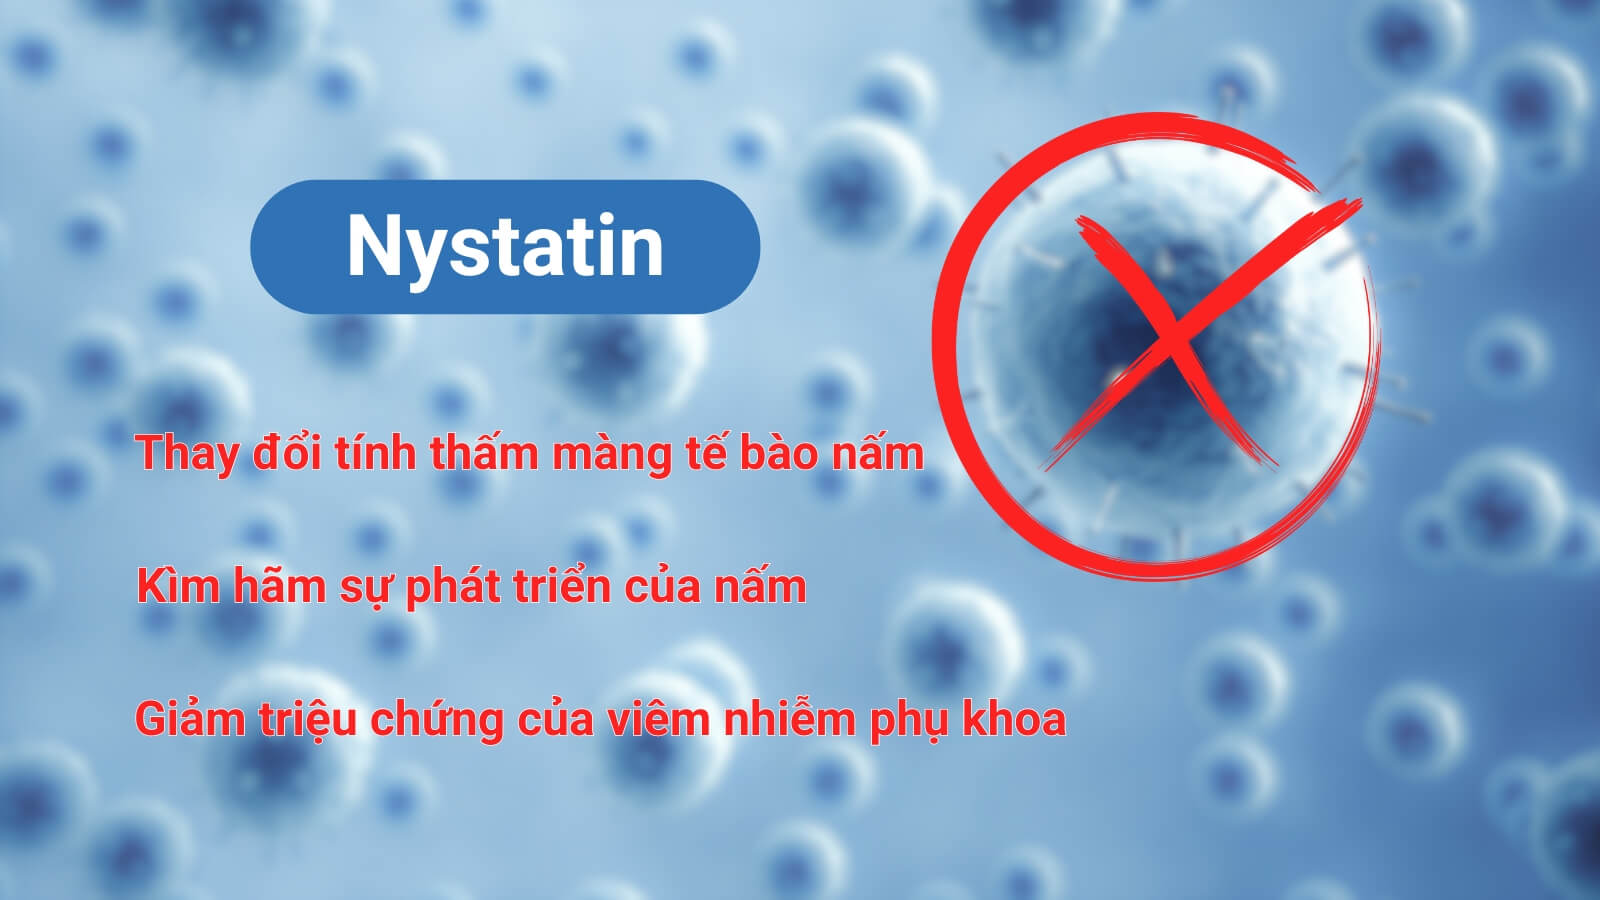 Nystatin có tác dụng diệt tế bào nấm hiệu quả